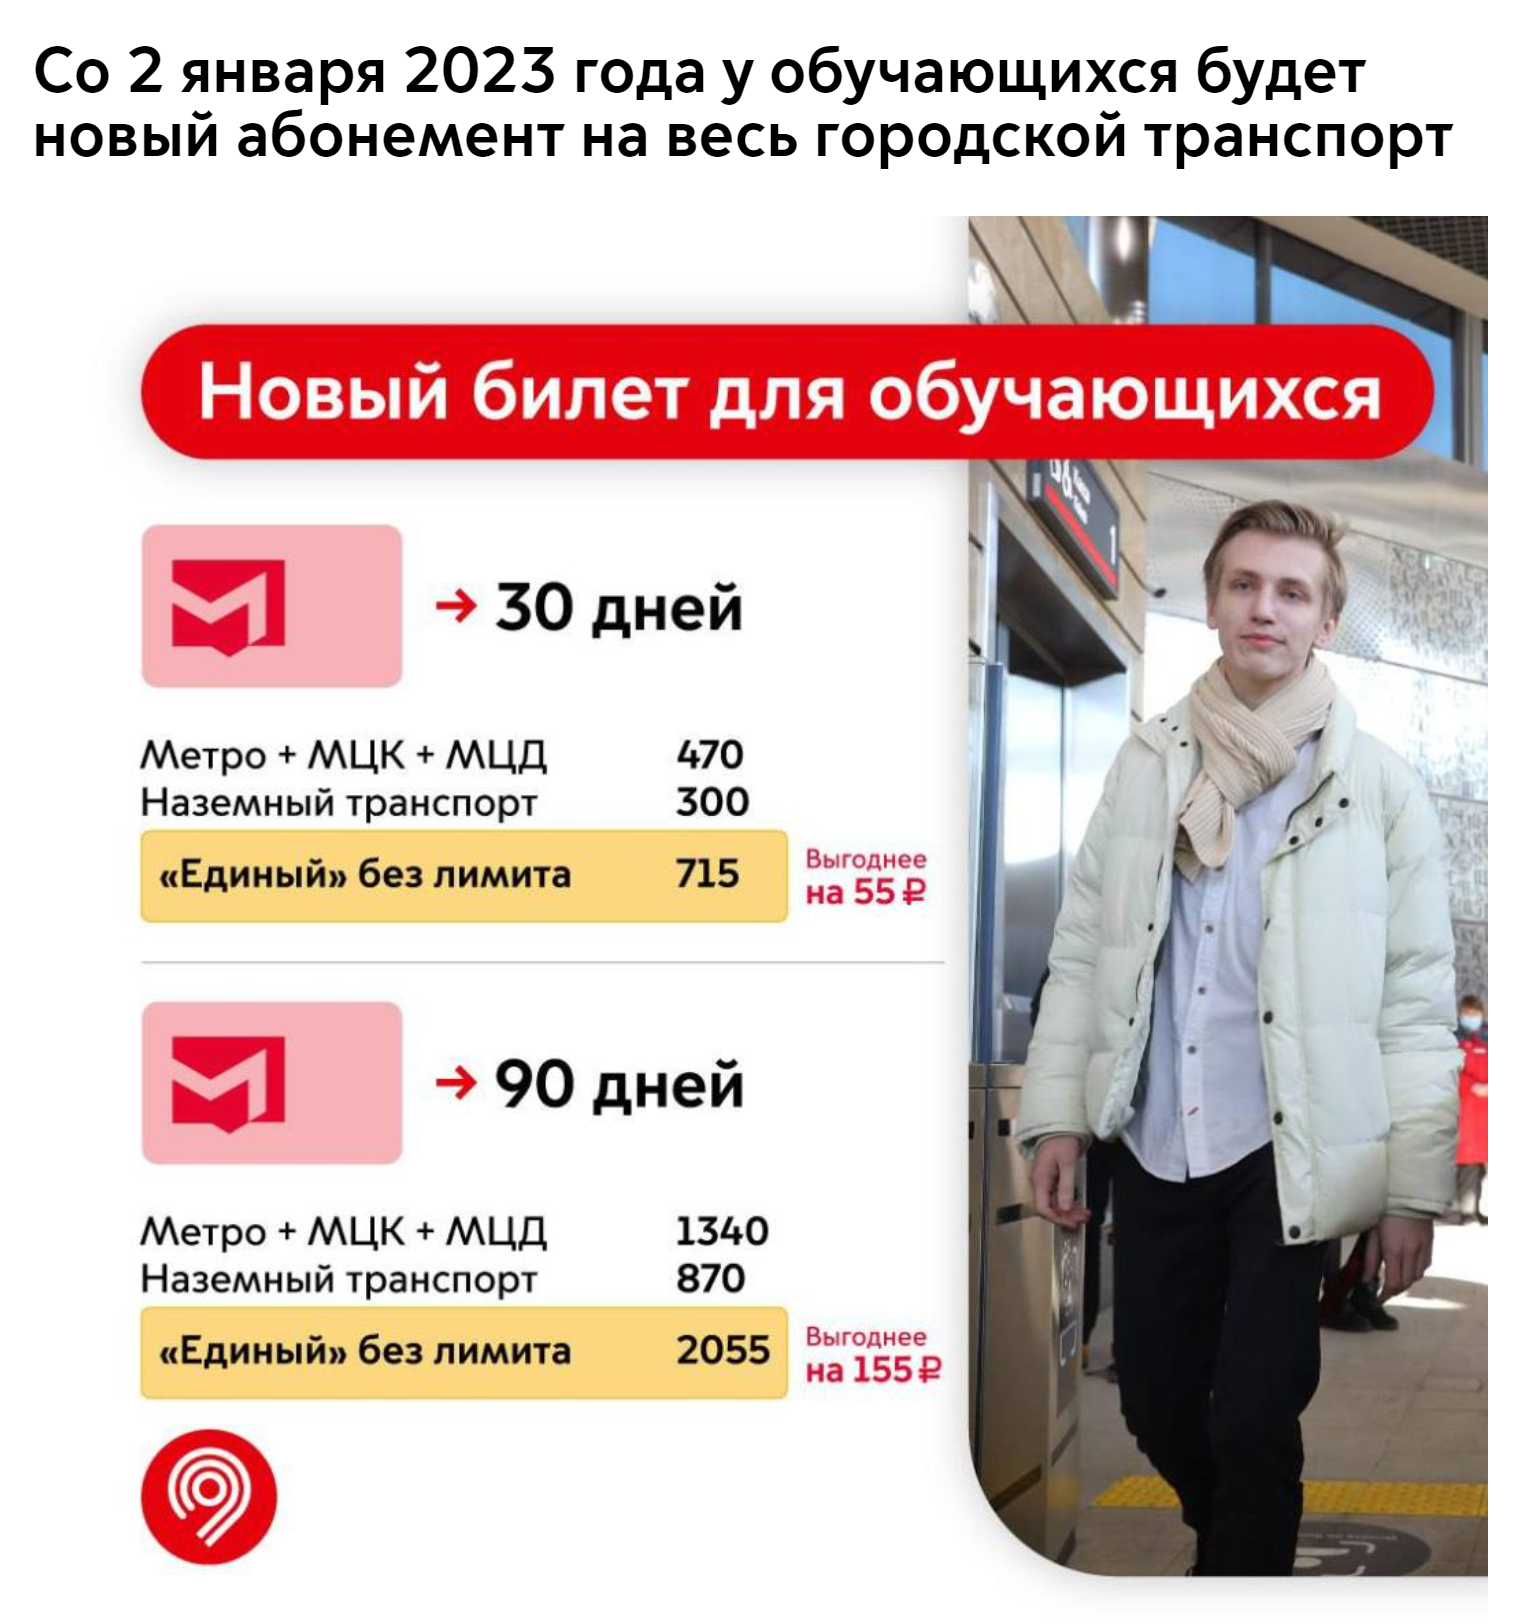 В общественном транспорте Москвы изменились тарифы на проезд